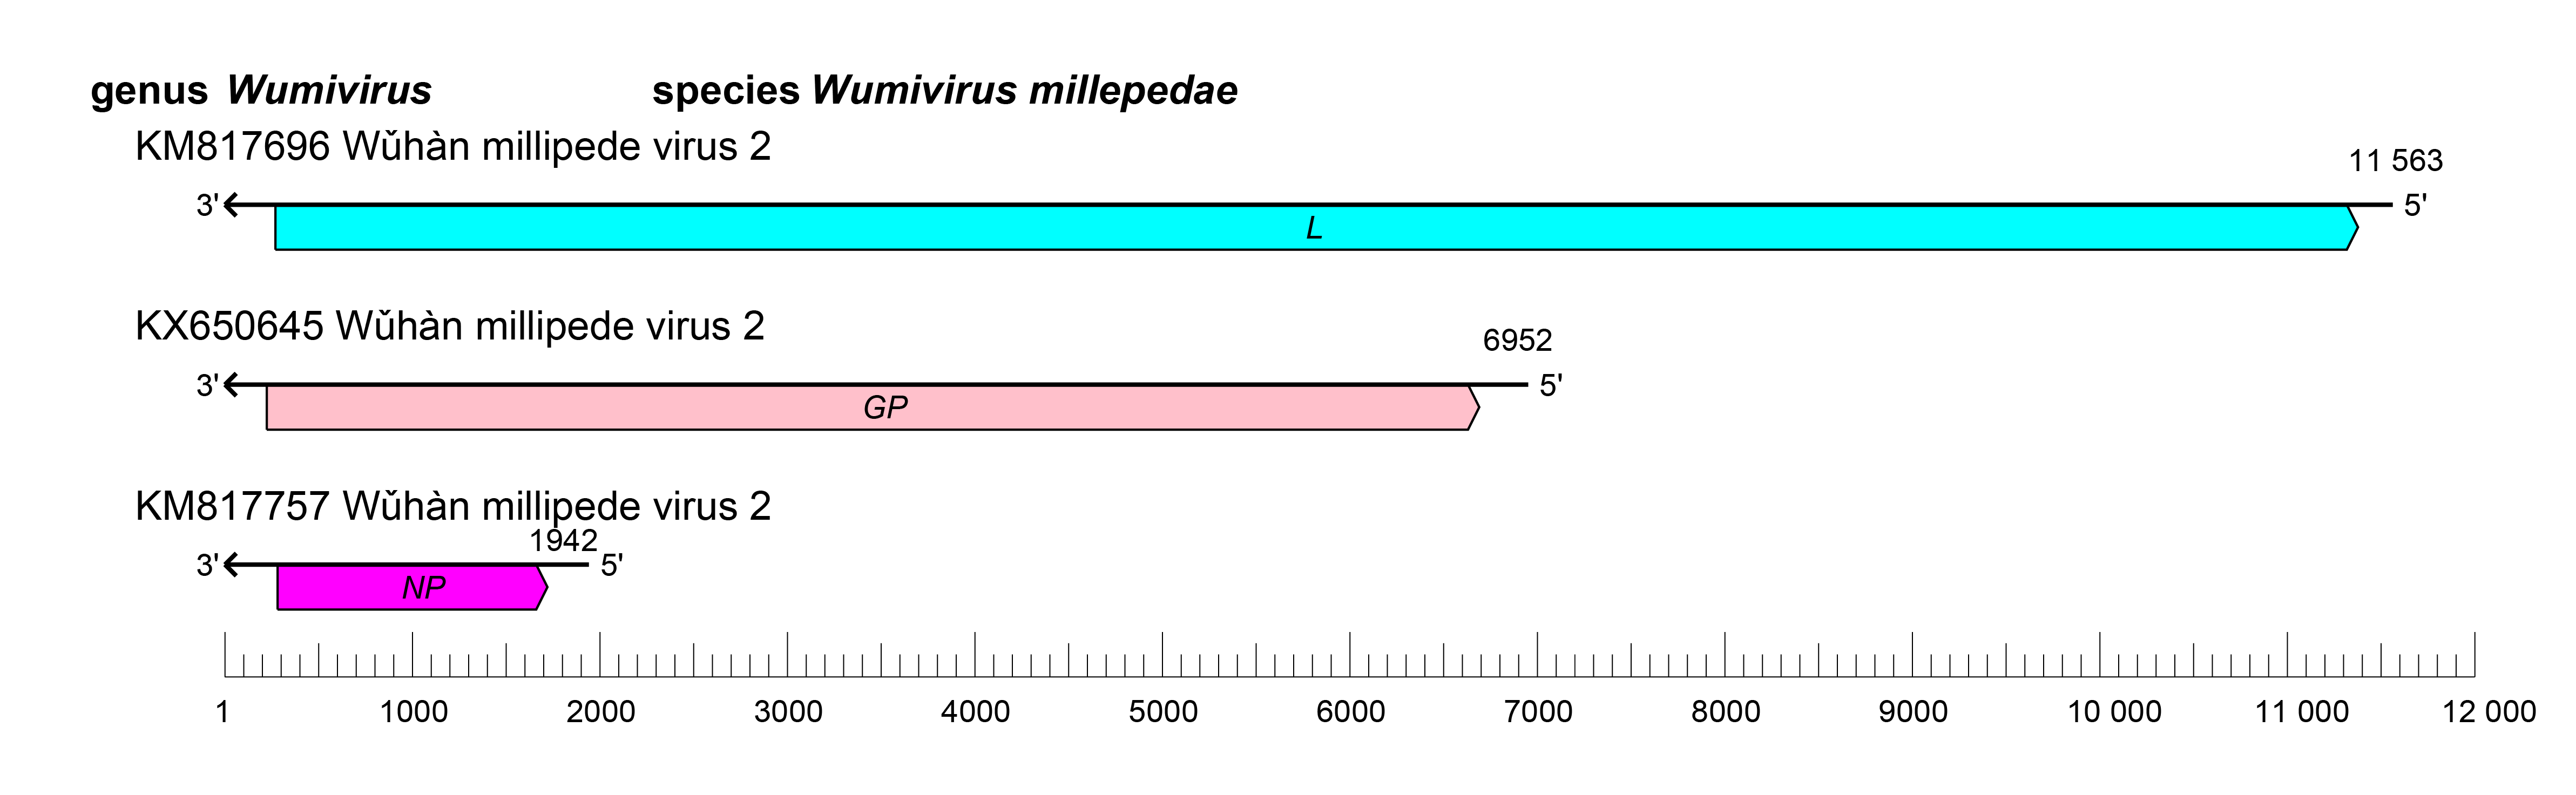 Wupedeviridae genome